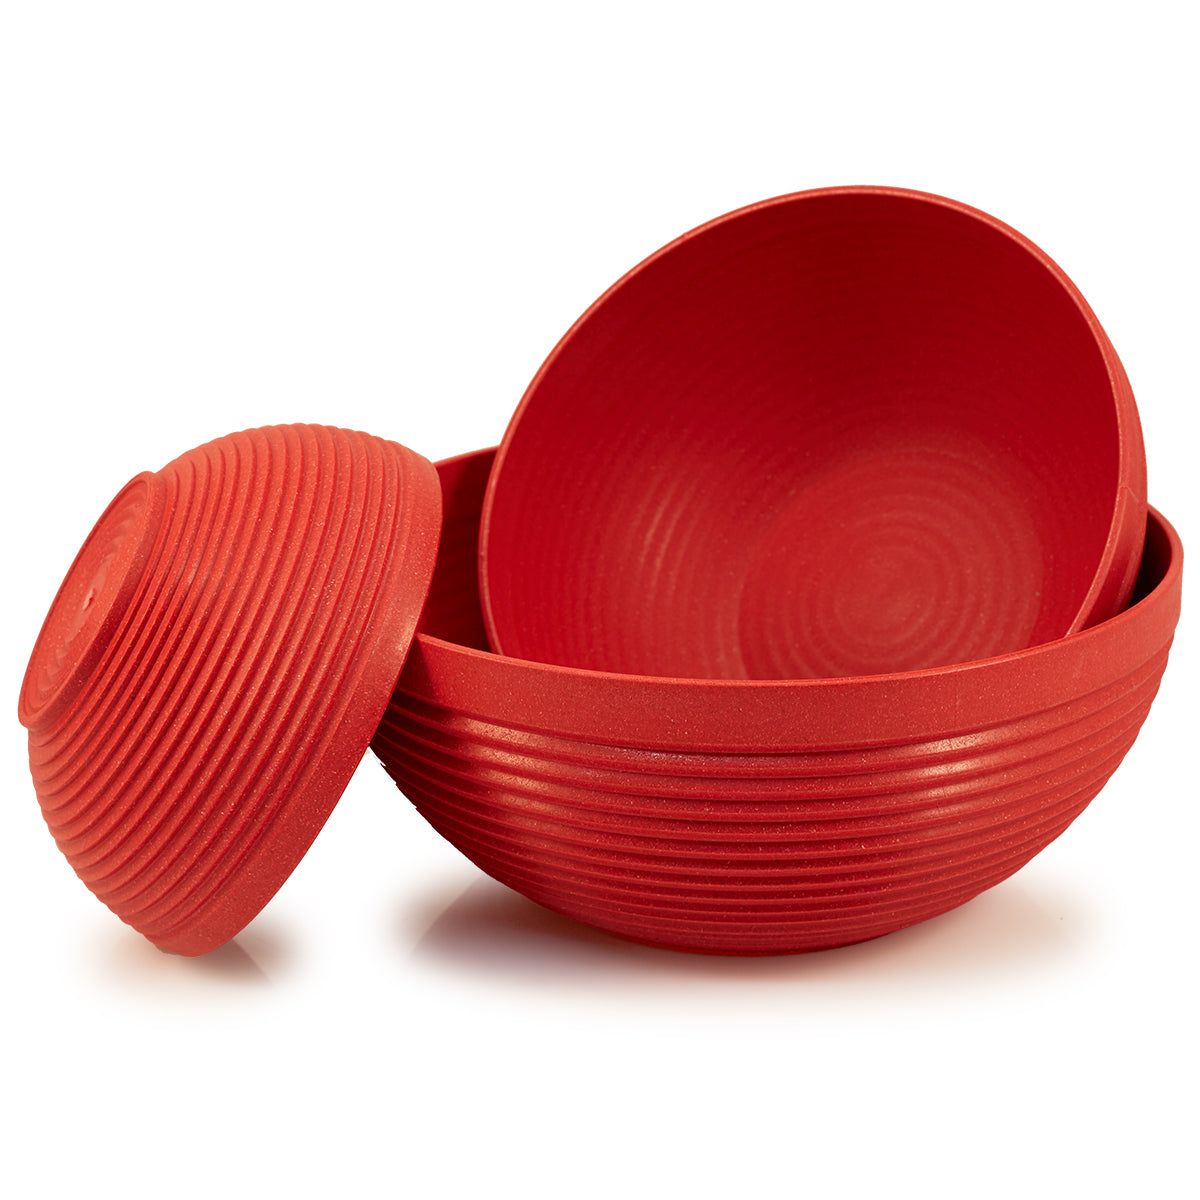 Maple Origins 3 Piece Bowl Set (paprika - red color) 1) 7 1/2x3 1